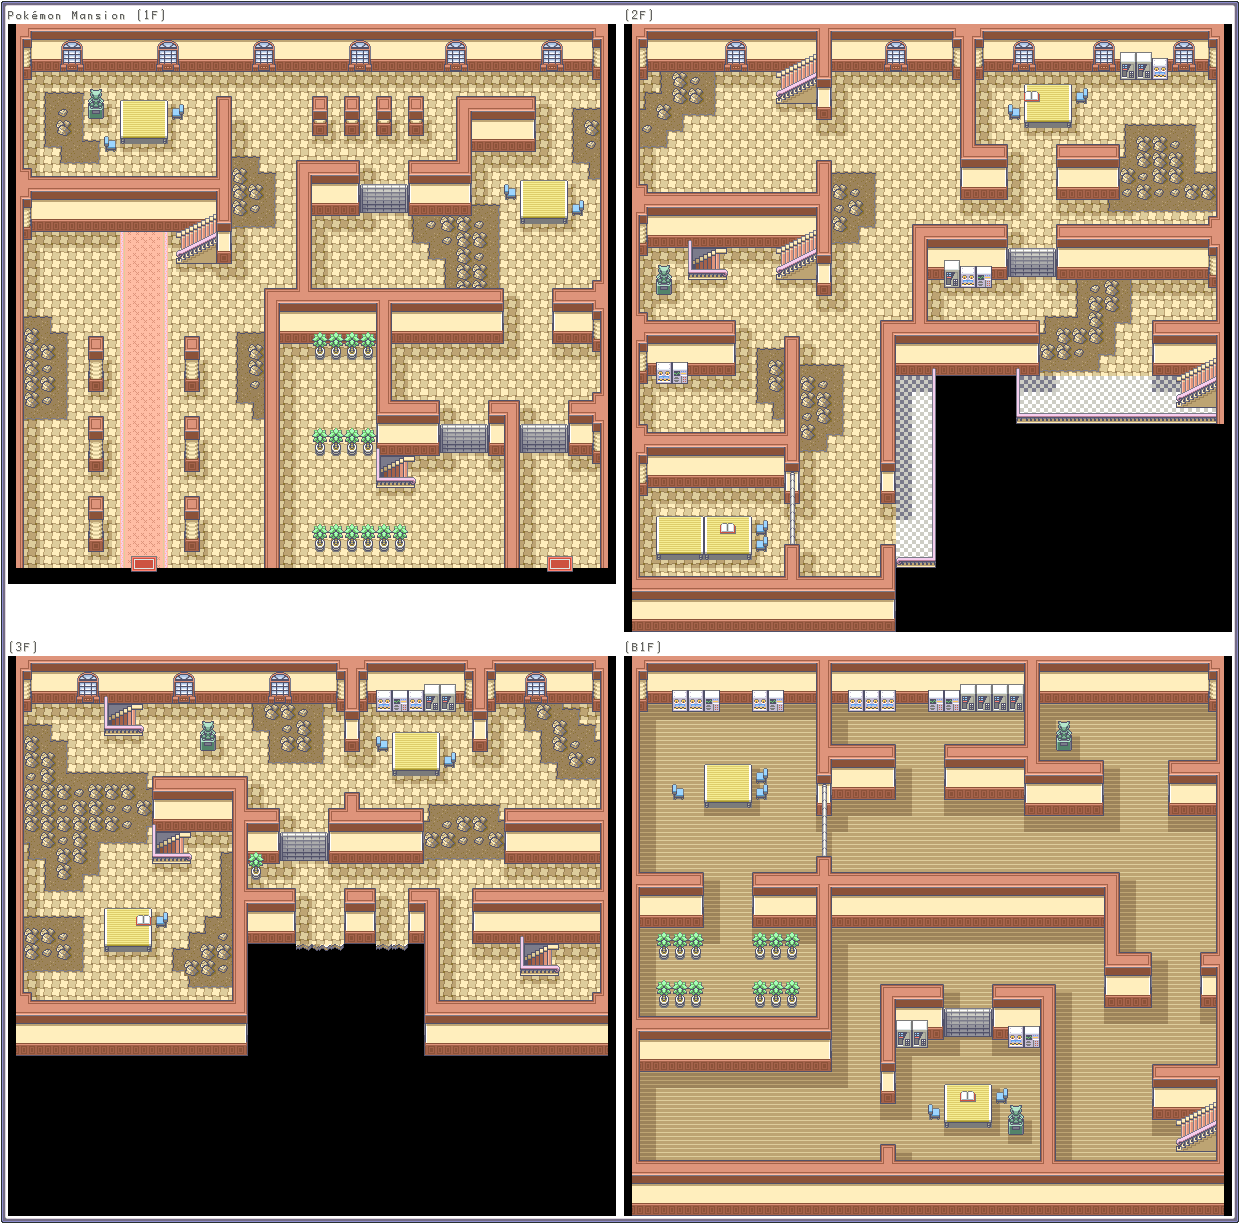 Boy - Pokémon FireRed / - Pokémon Mansion - The Resource